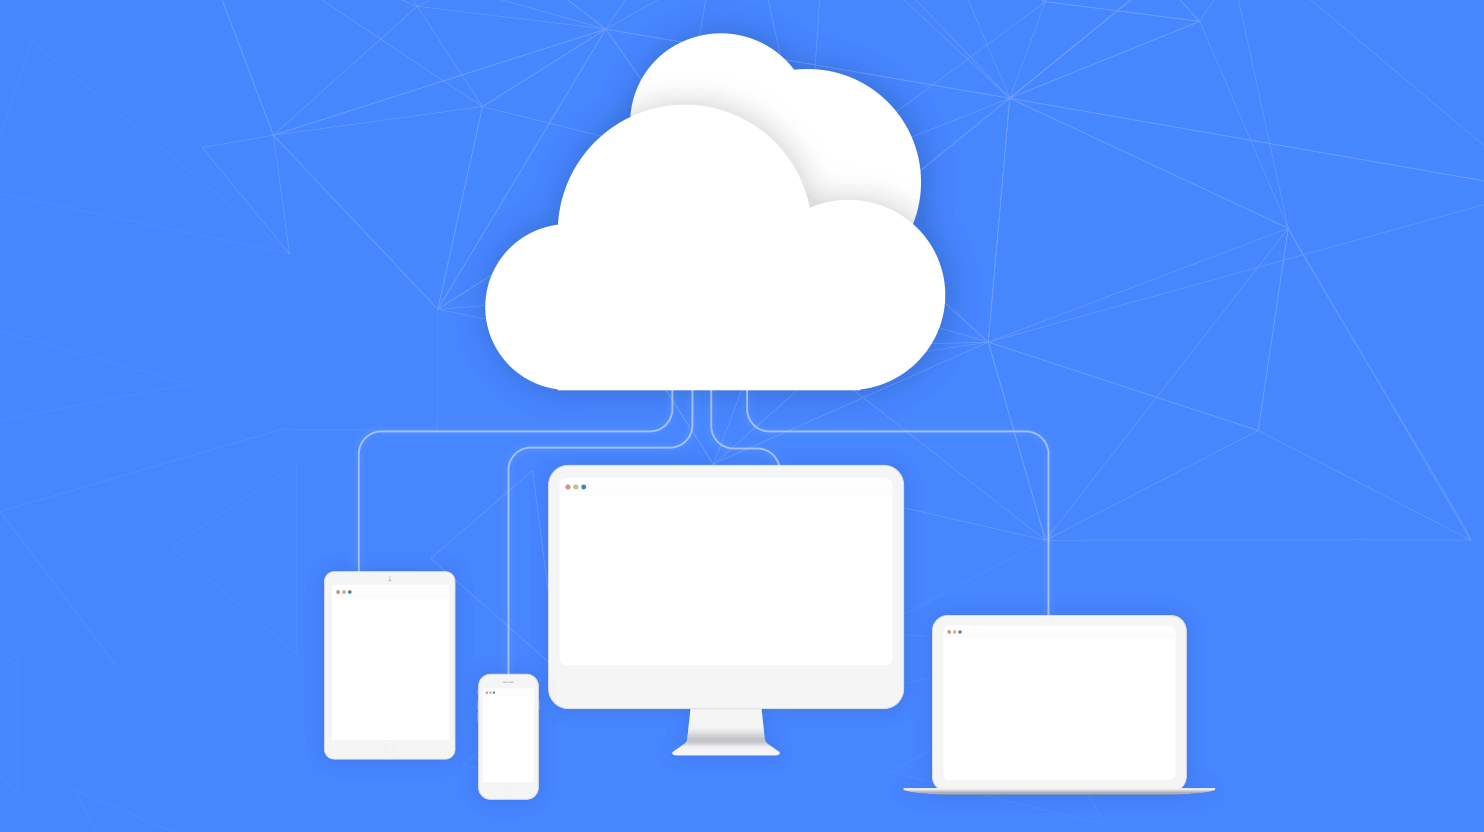 Hosting in cloud is flexible